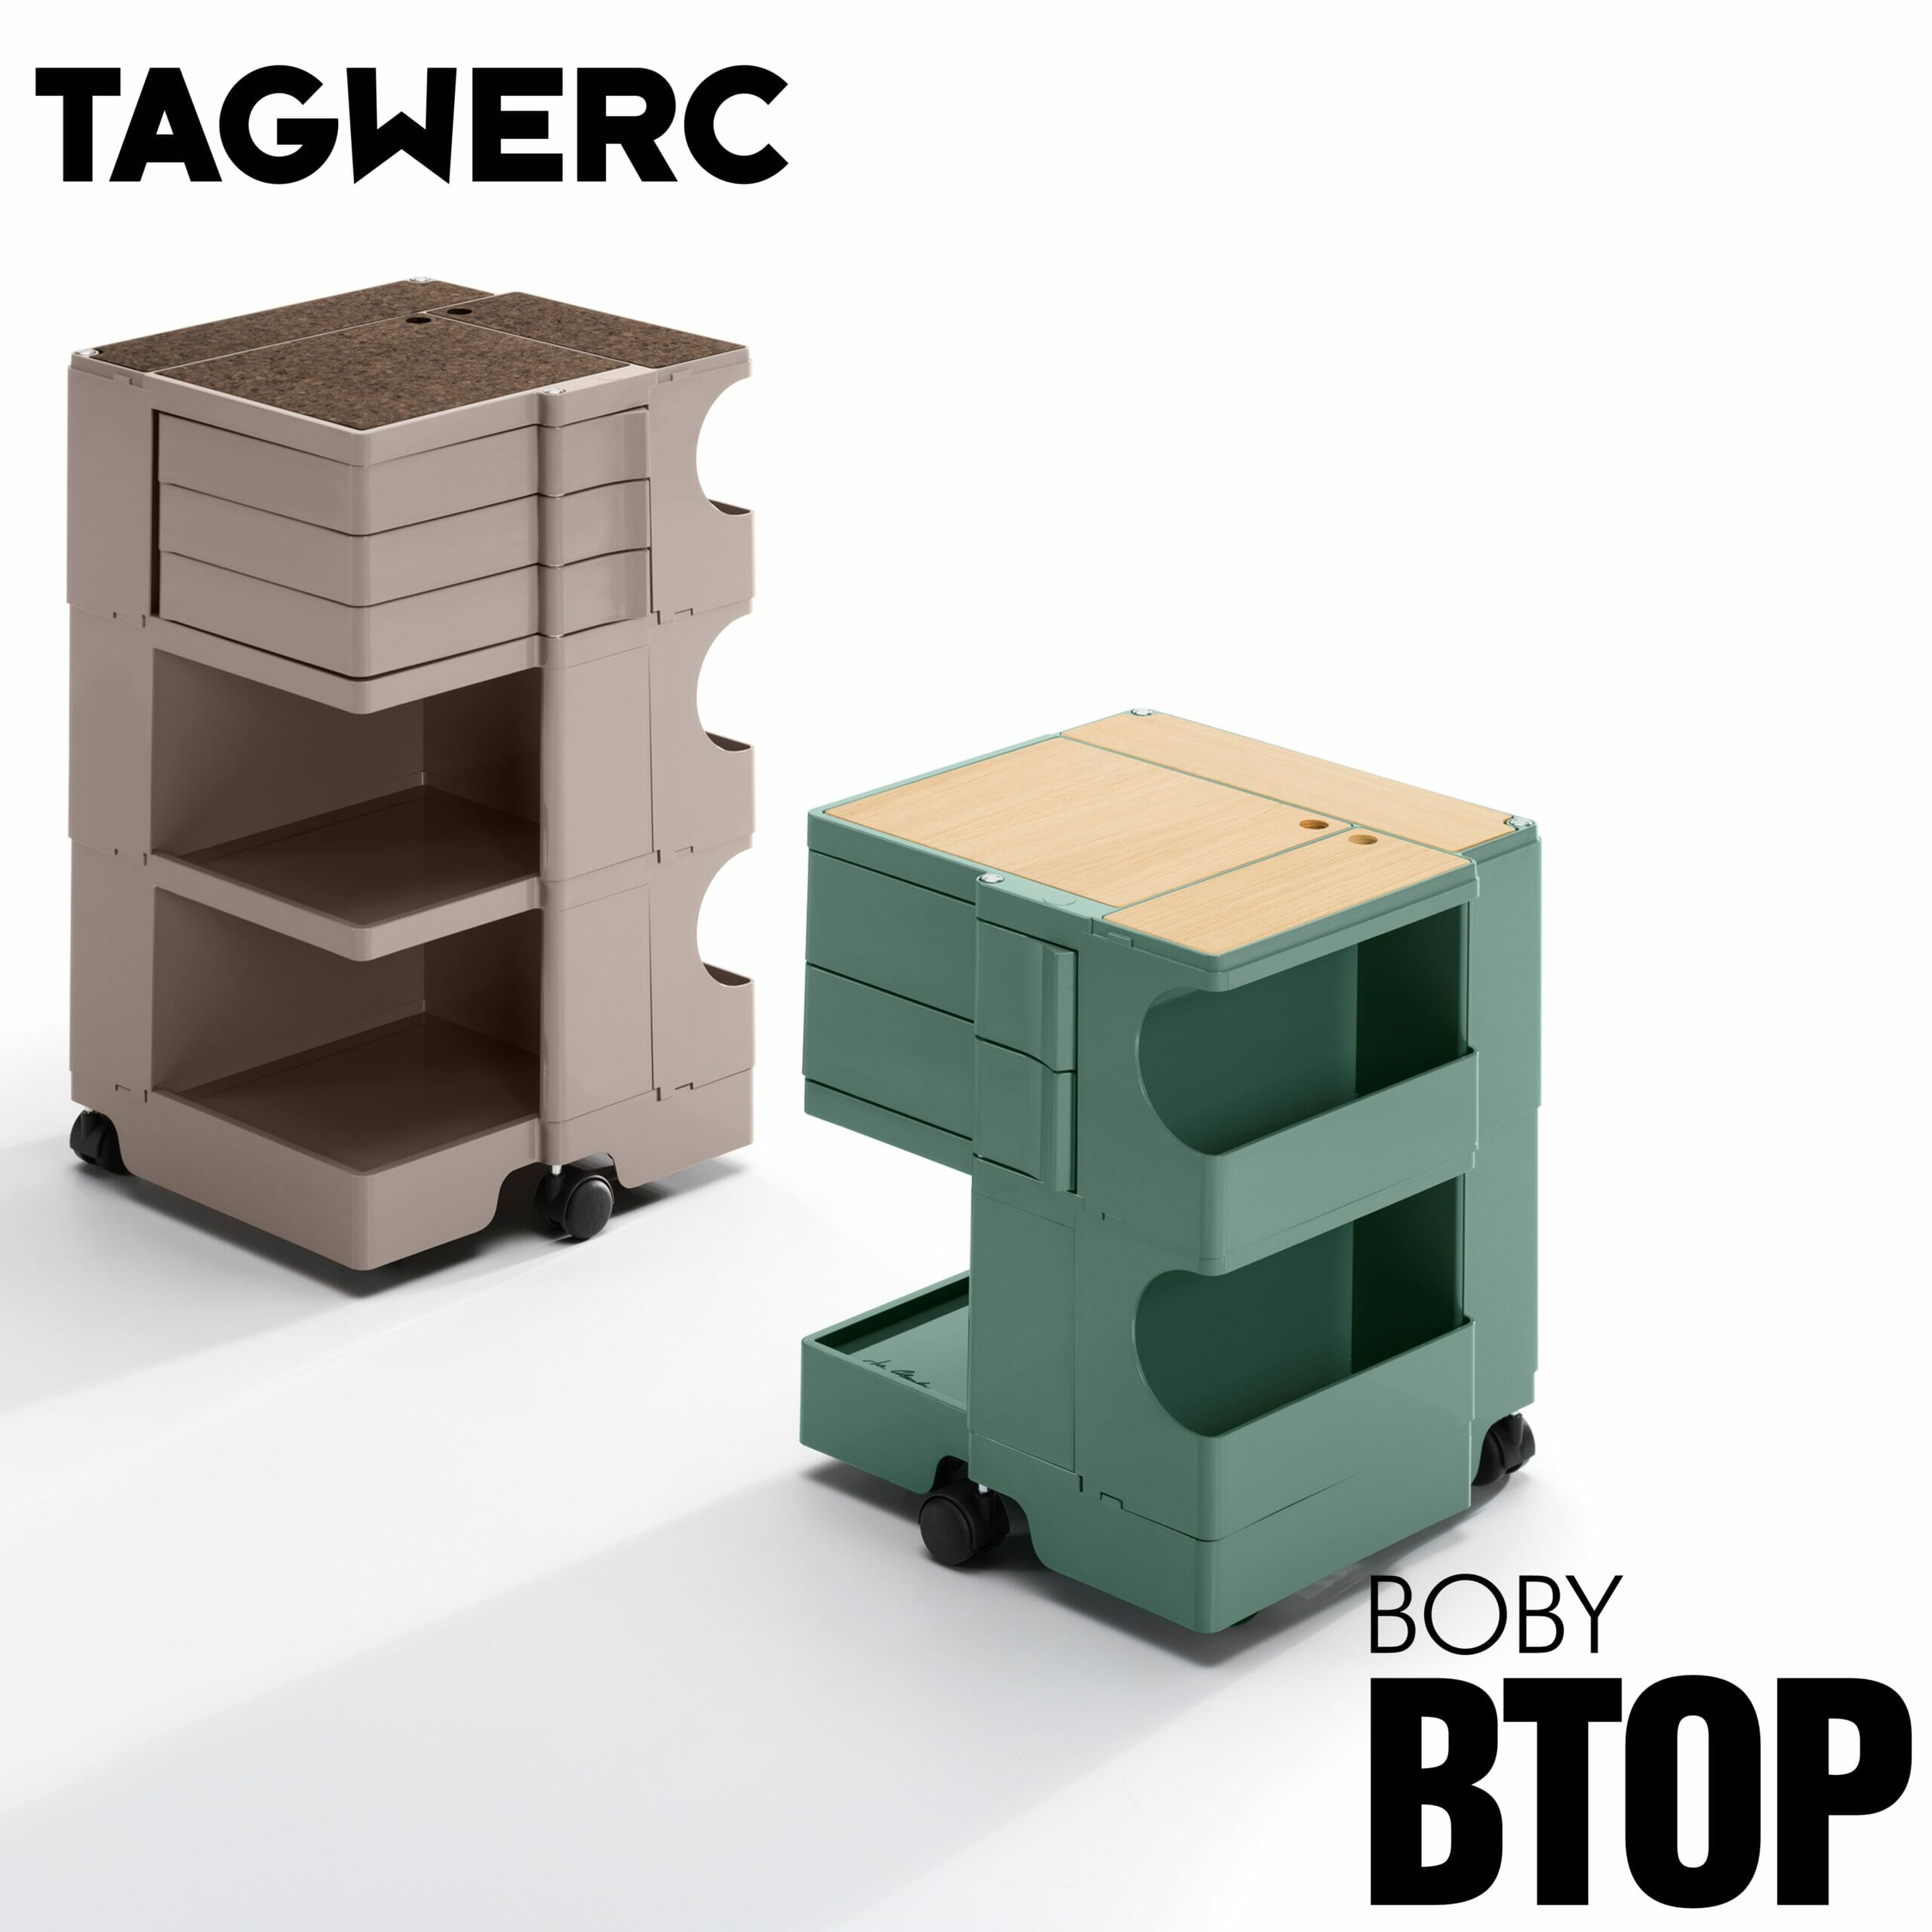 Auflage BTOP B—Line Natur Boby - Rollcontainer Eiche für